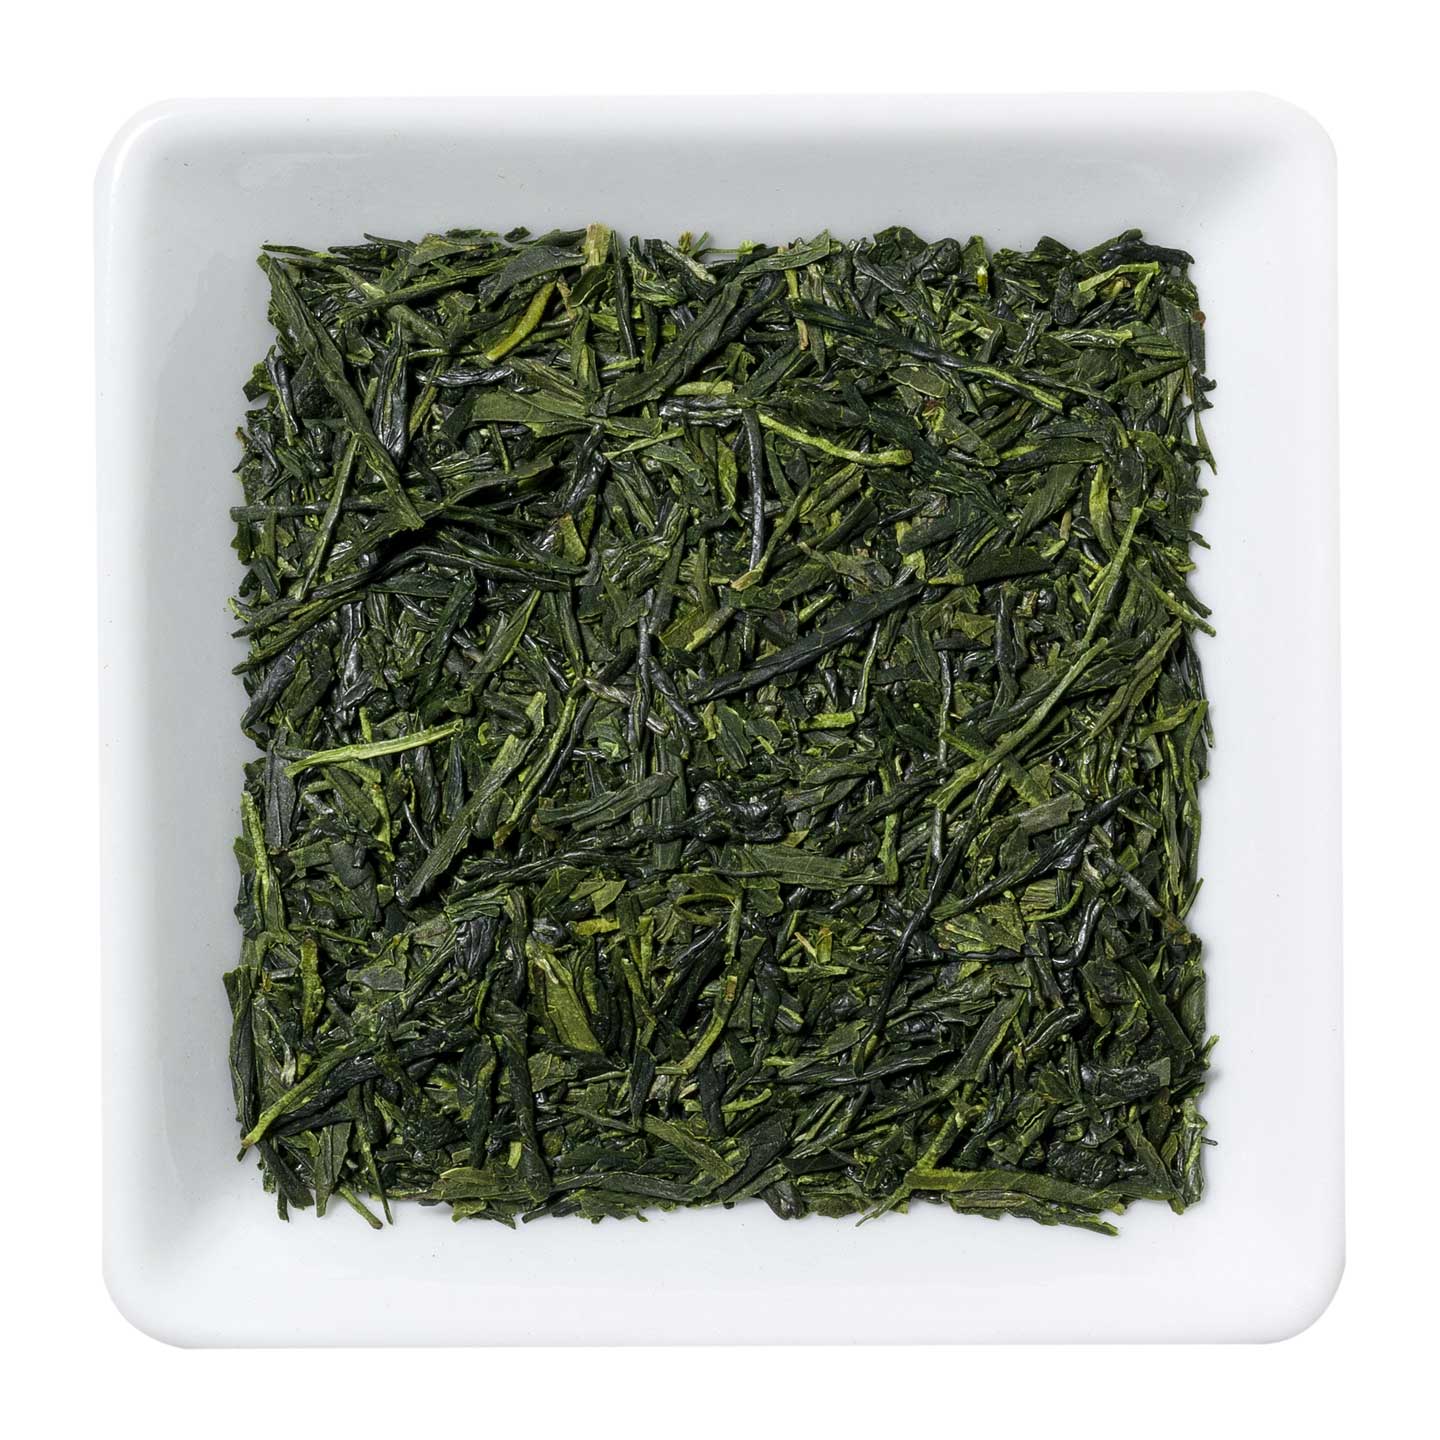 Чай зеленый Сенча, 100 г